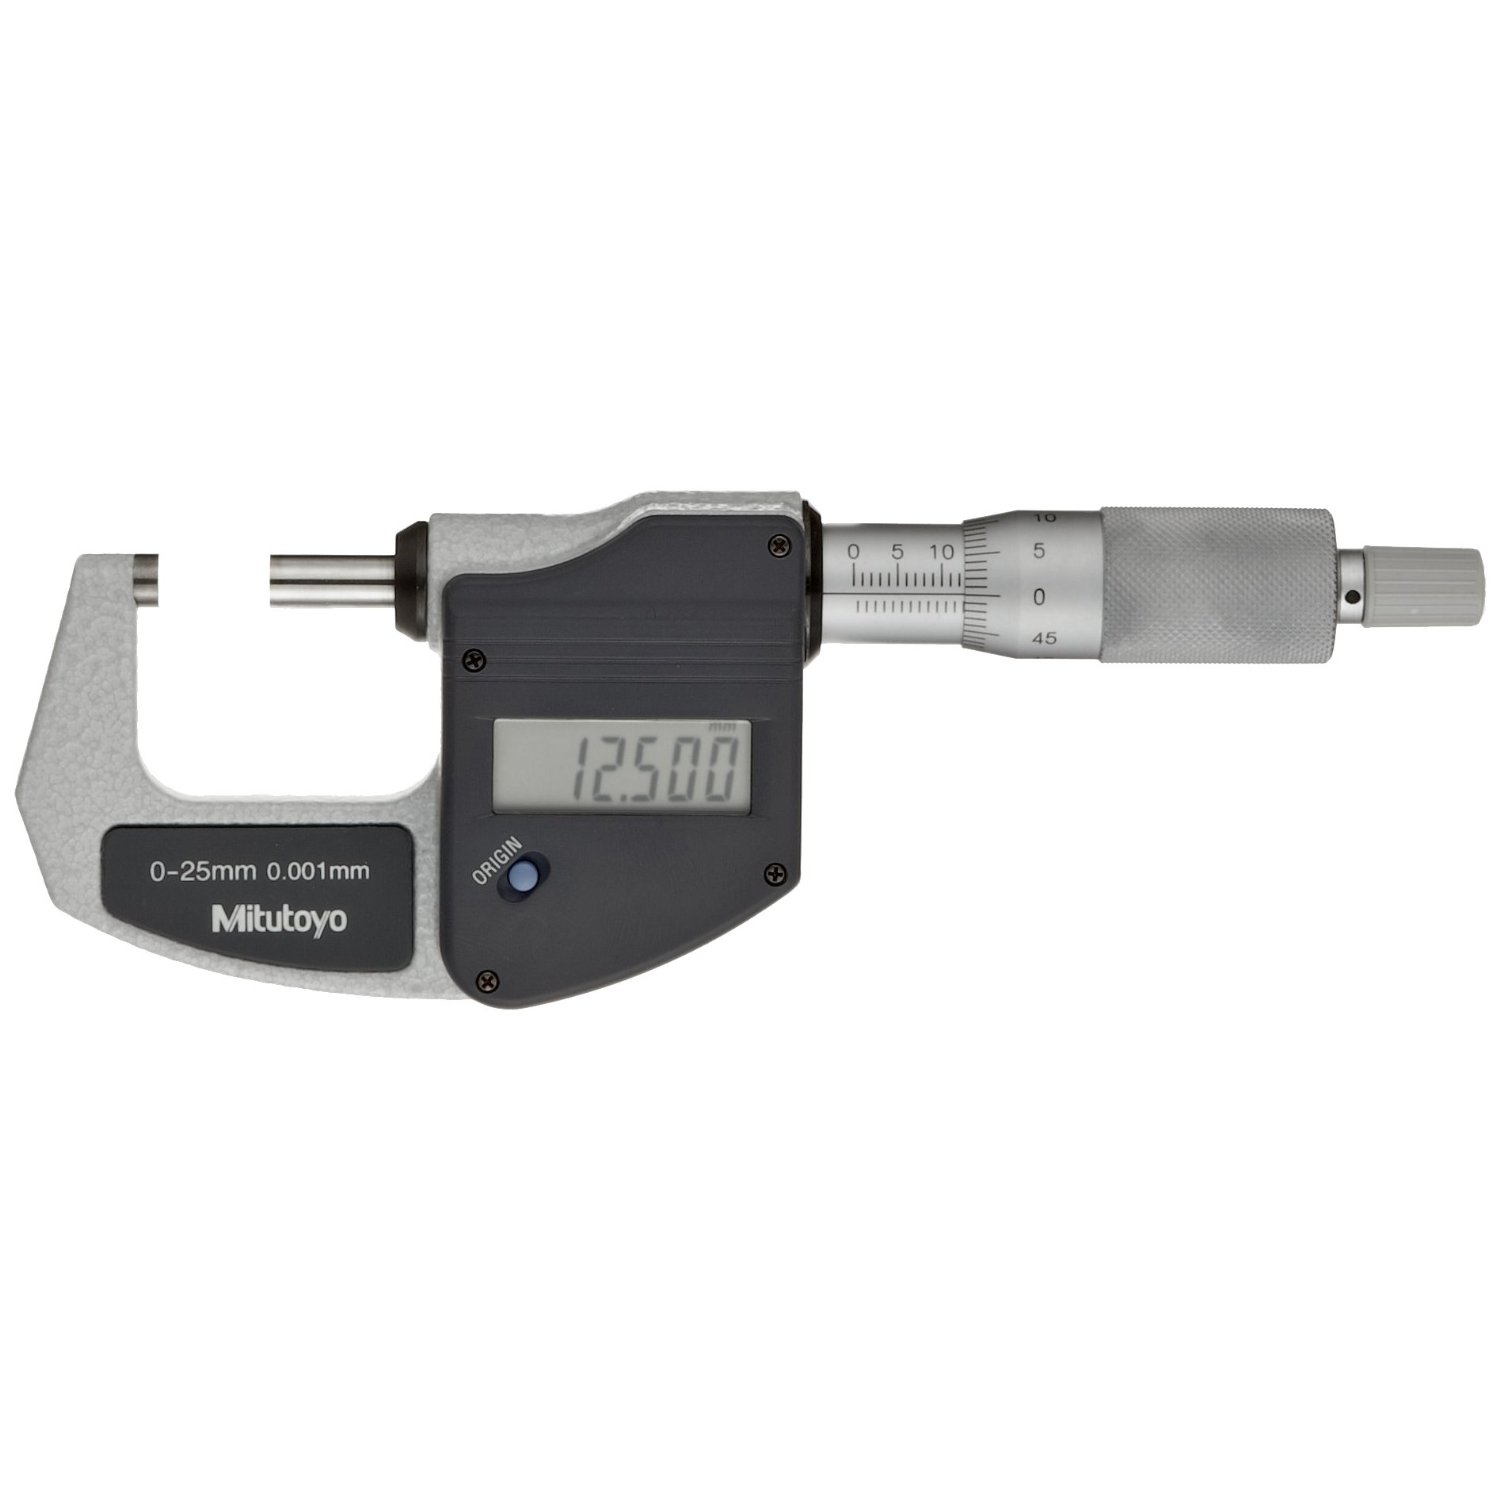 Mitutoyo 293-821 LCD Digimatic Micrometer